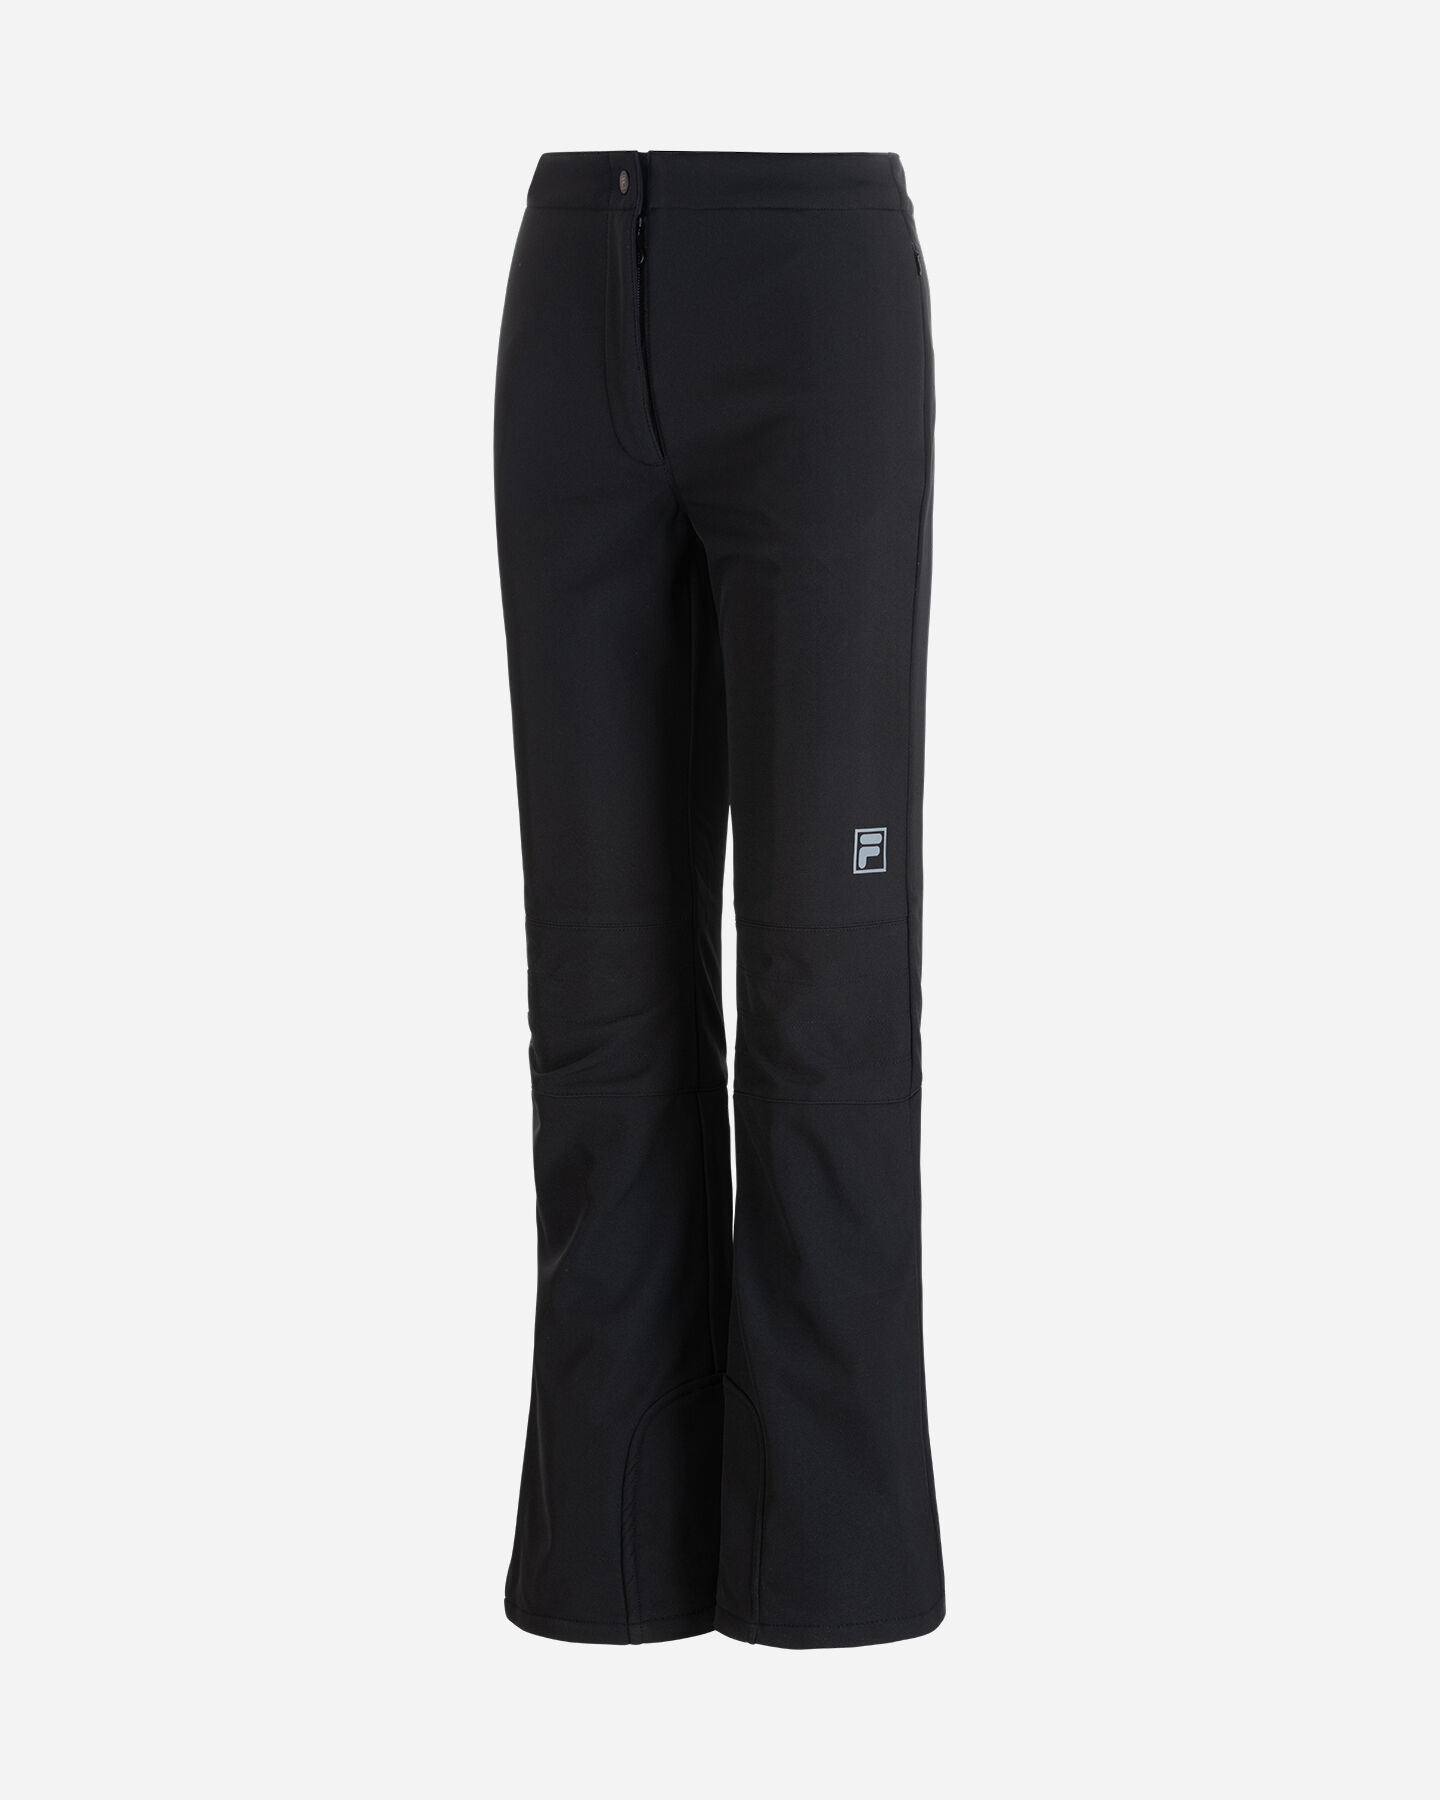  Pantalone sci FILA TECH W S4111755|050|XL scatto 0